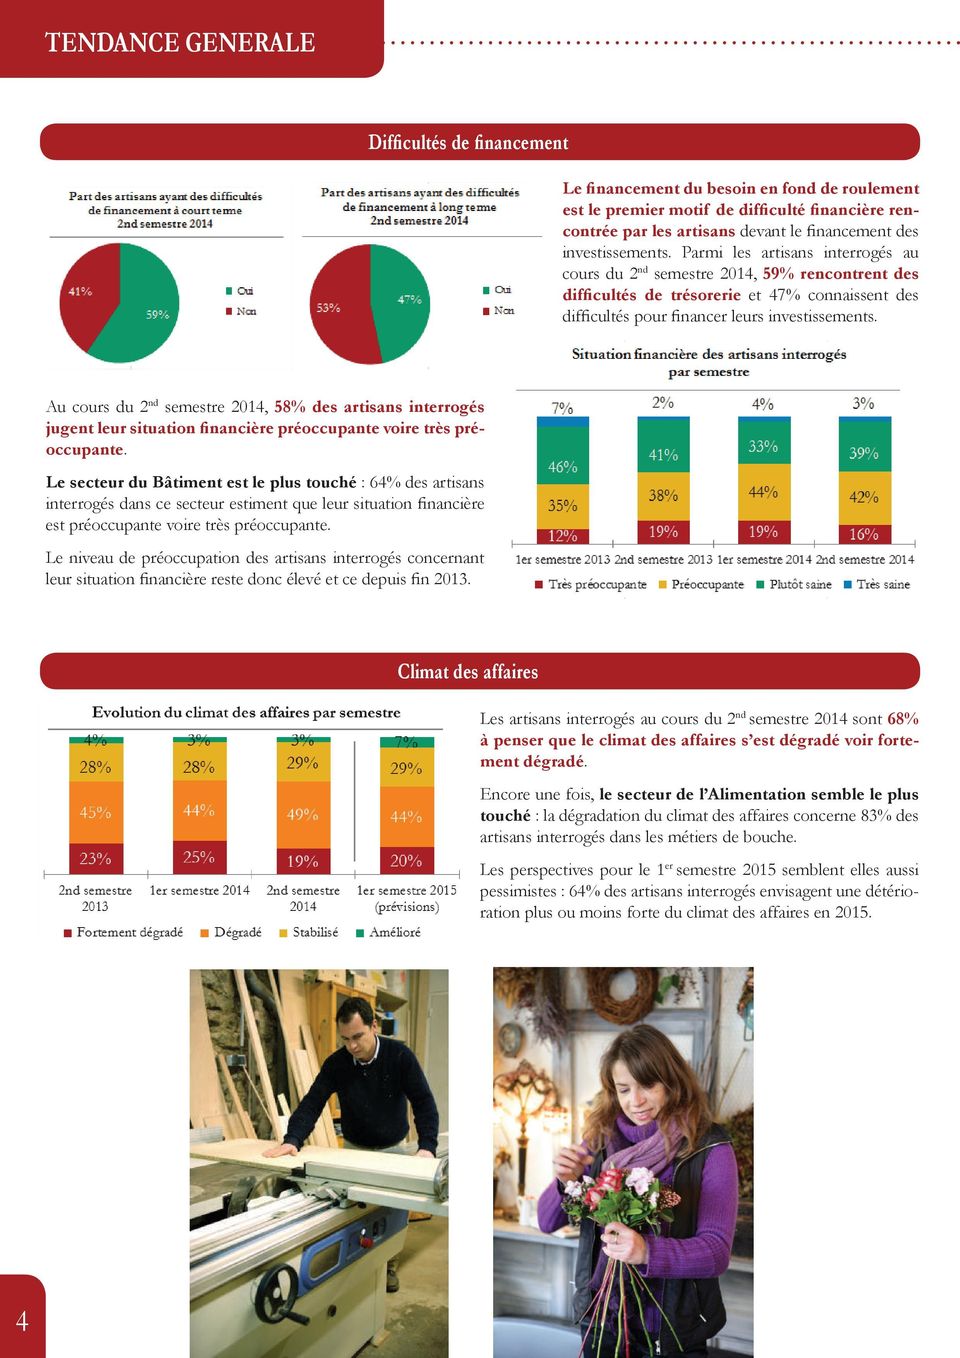 Au cours du 2 nd semestre 2014, 58% des artisans interrogés jugent leur situation financière préoccupante voire très préoccupante.